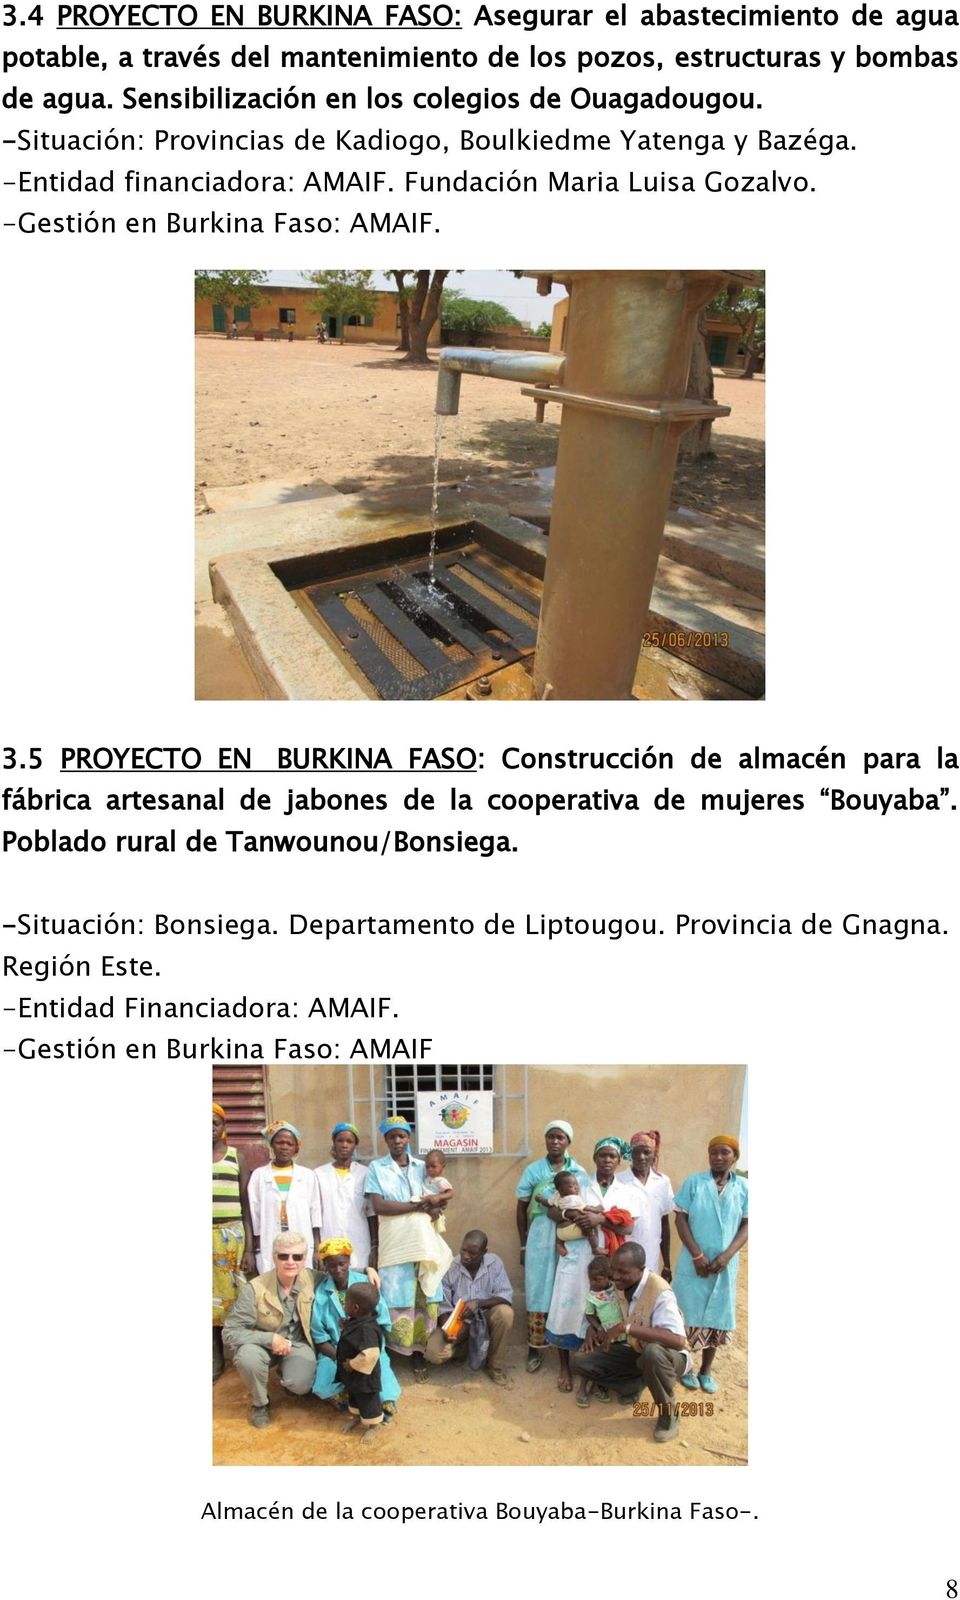 -Gestión en Burkina Faso: AMAIF. 3.5 PROYECTO EN BURKINA FASO: Construcción de almacén para la fábrica artesanal de jabones de la cooperativa de mujeres Bouyaba.